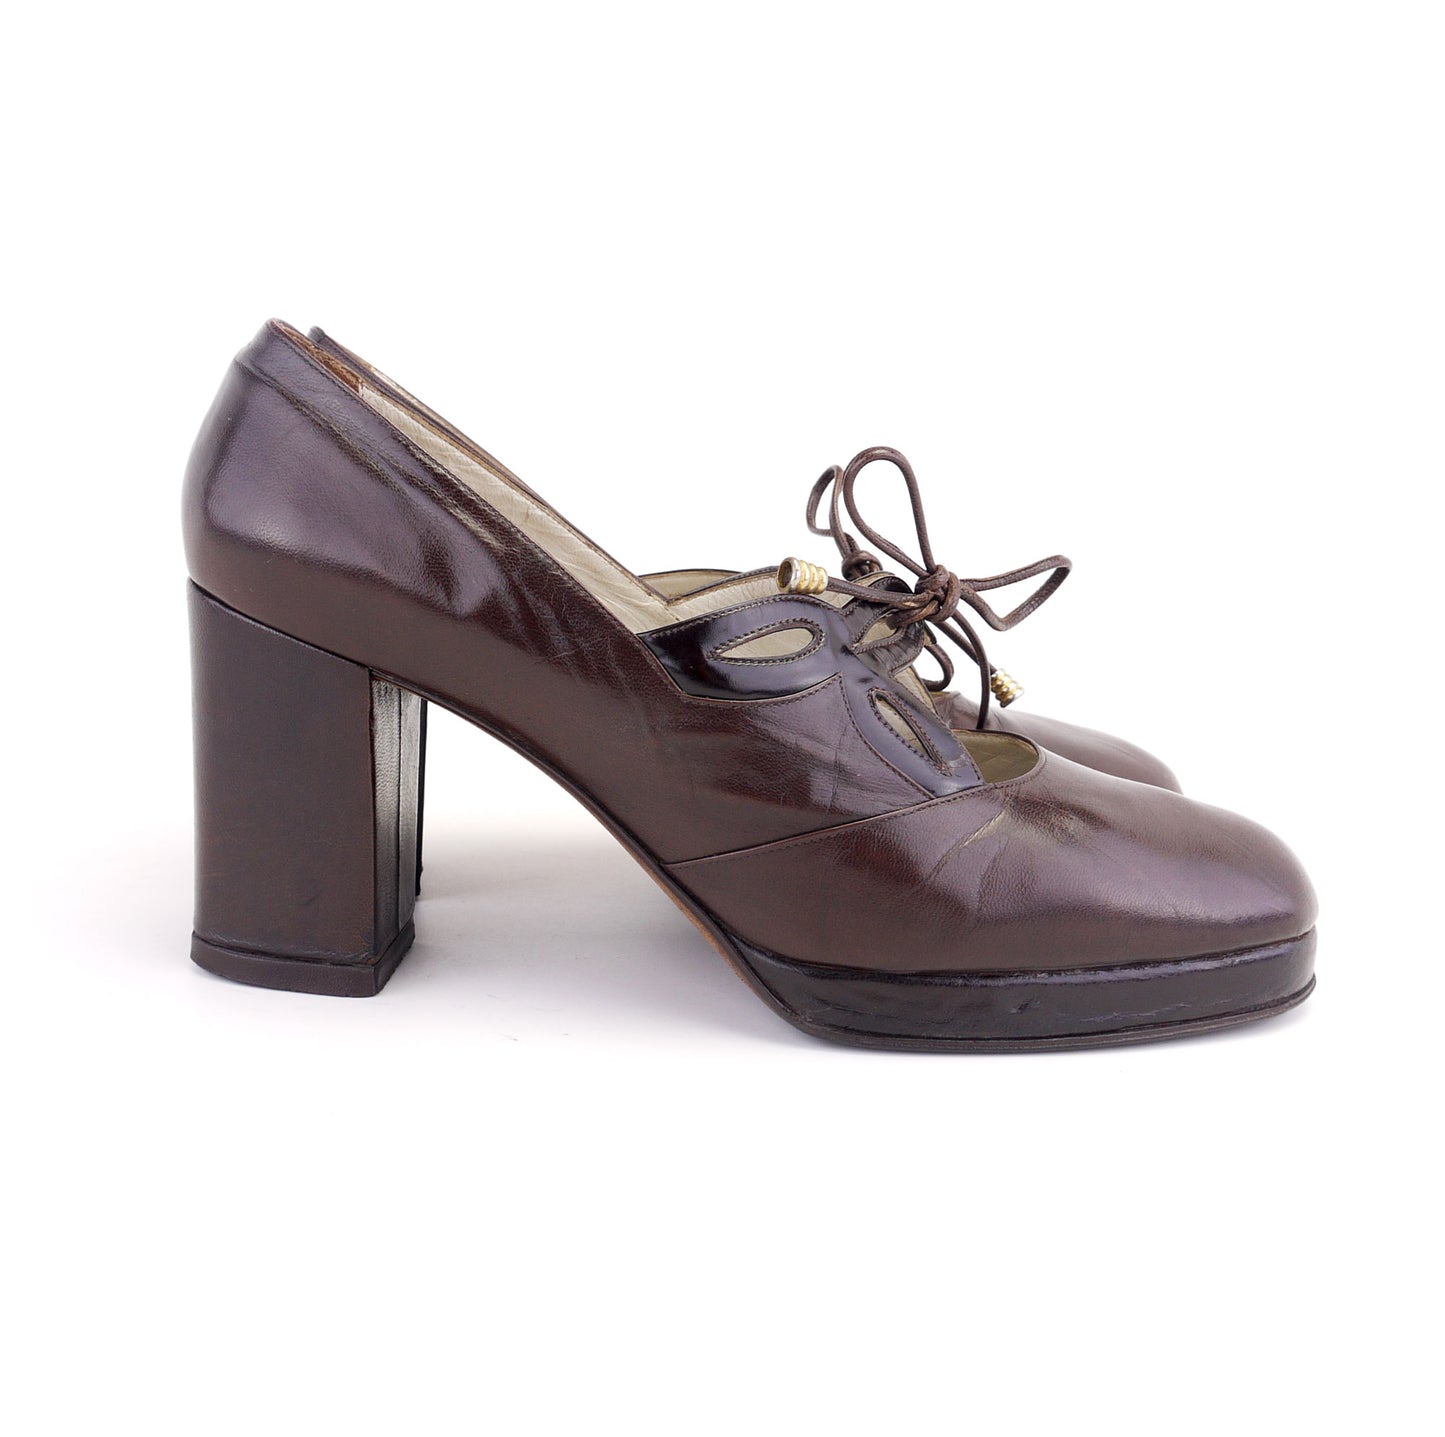 1970s Italian Platforms Mary Jane shoes UK 4